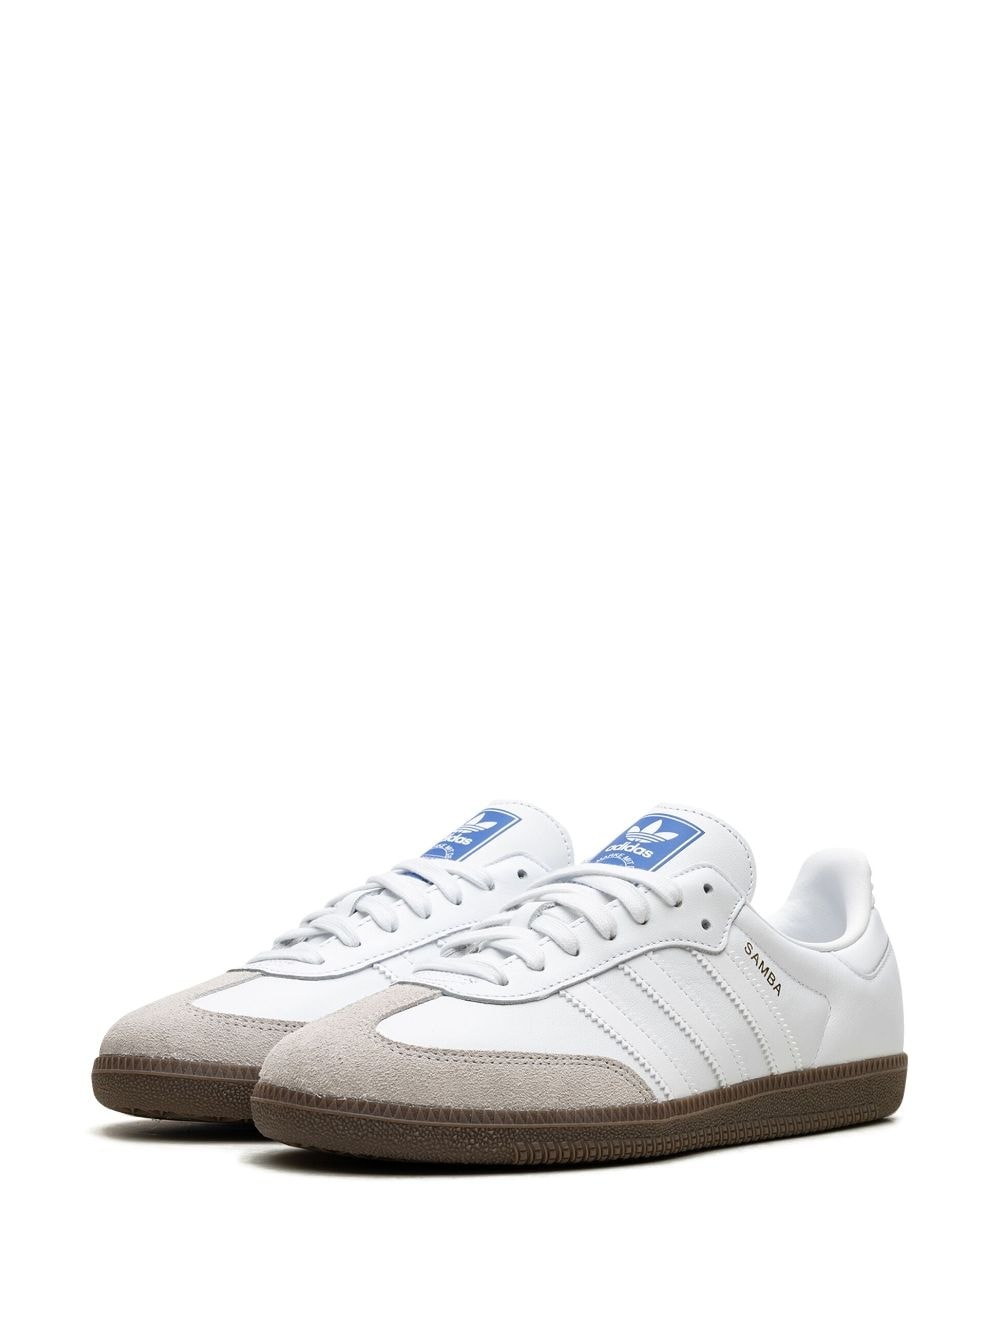 Samba OG "Double White Gum" sneakers - 5